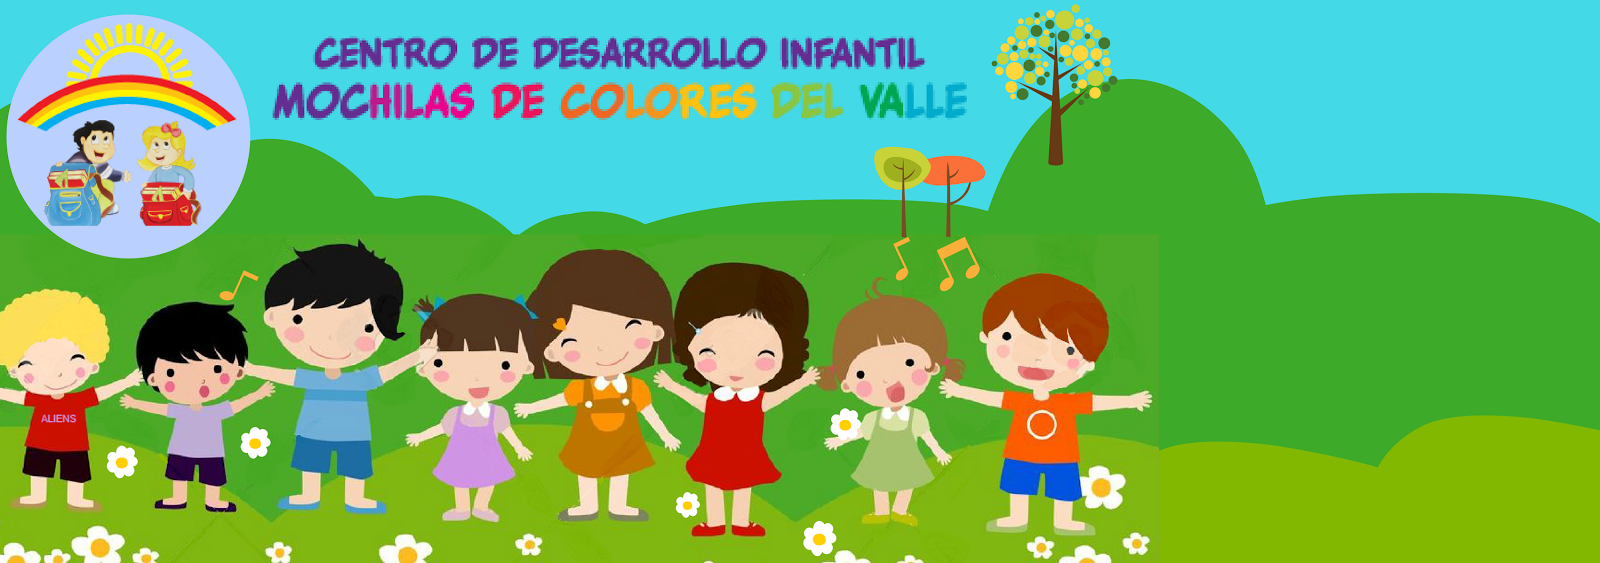 Centro de Desarrollo Infantil Mochilas de Colores